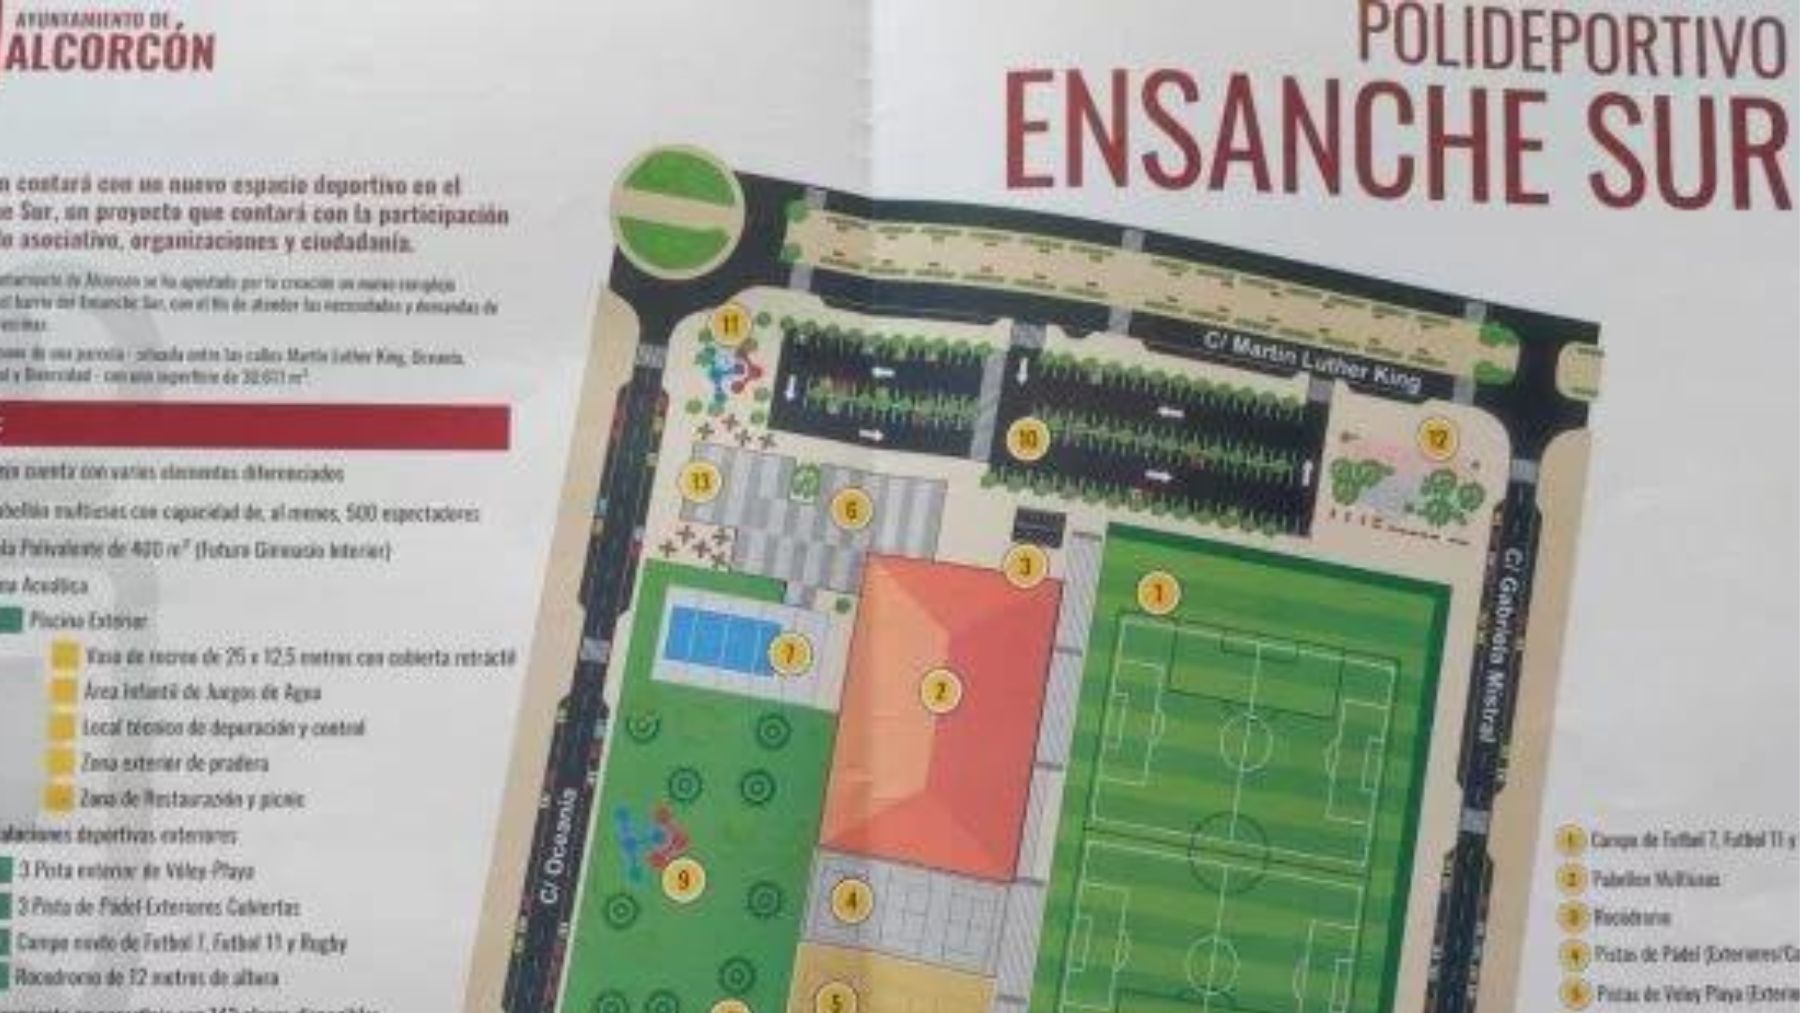 Imagen del polideportivo que querían construir en Alcorcón.